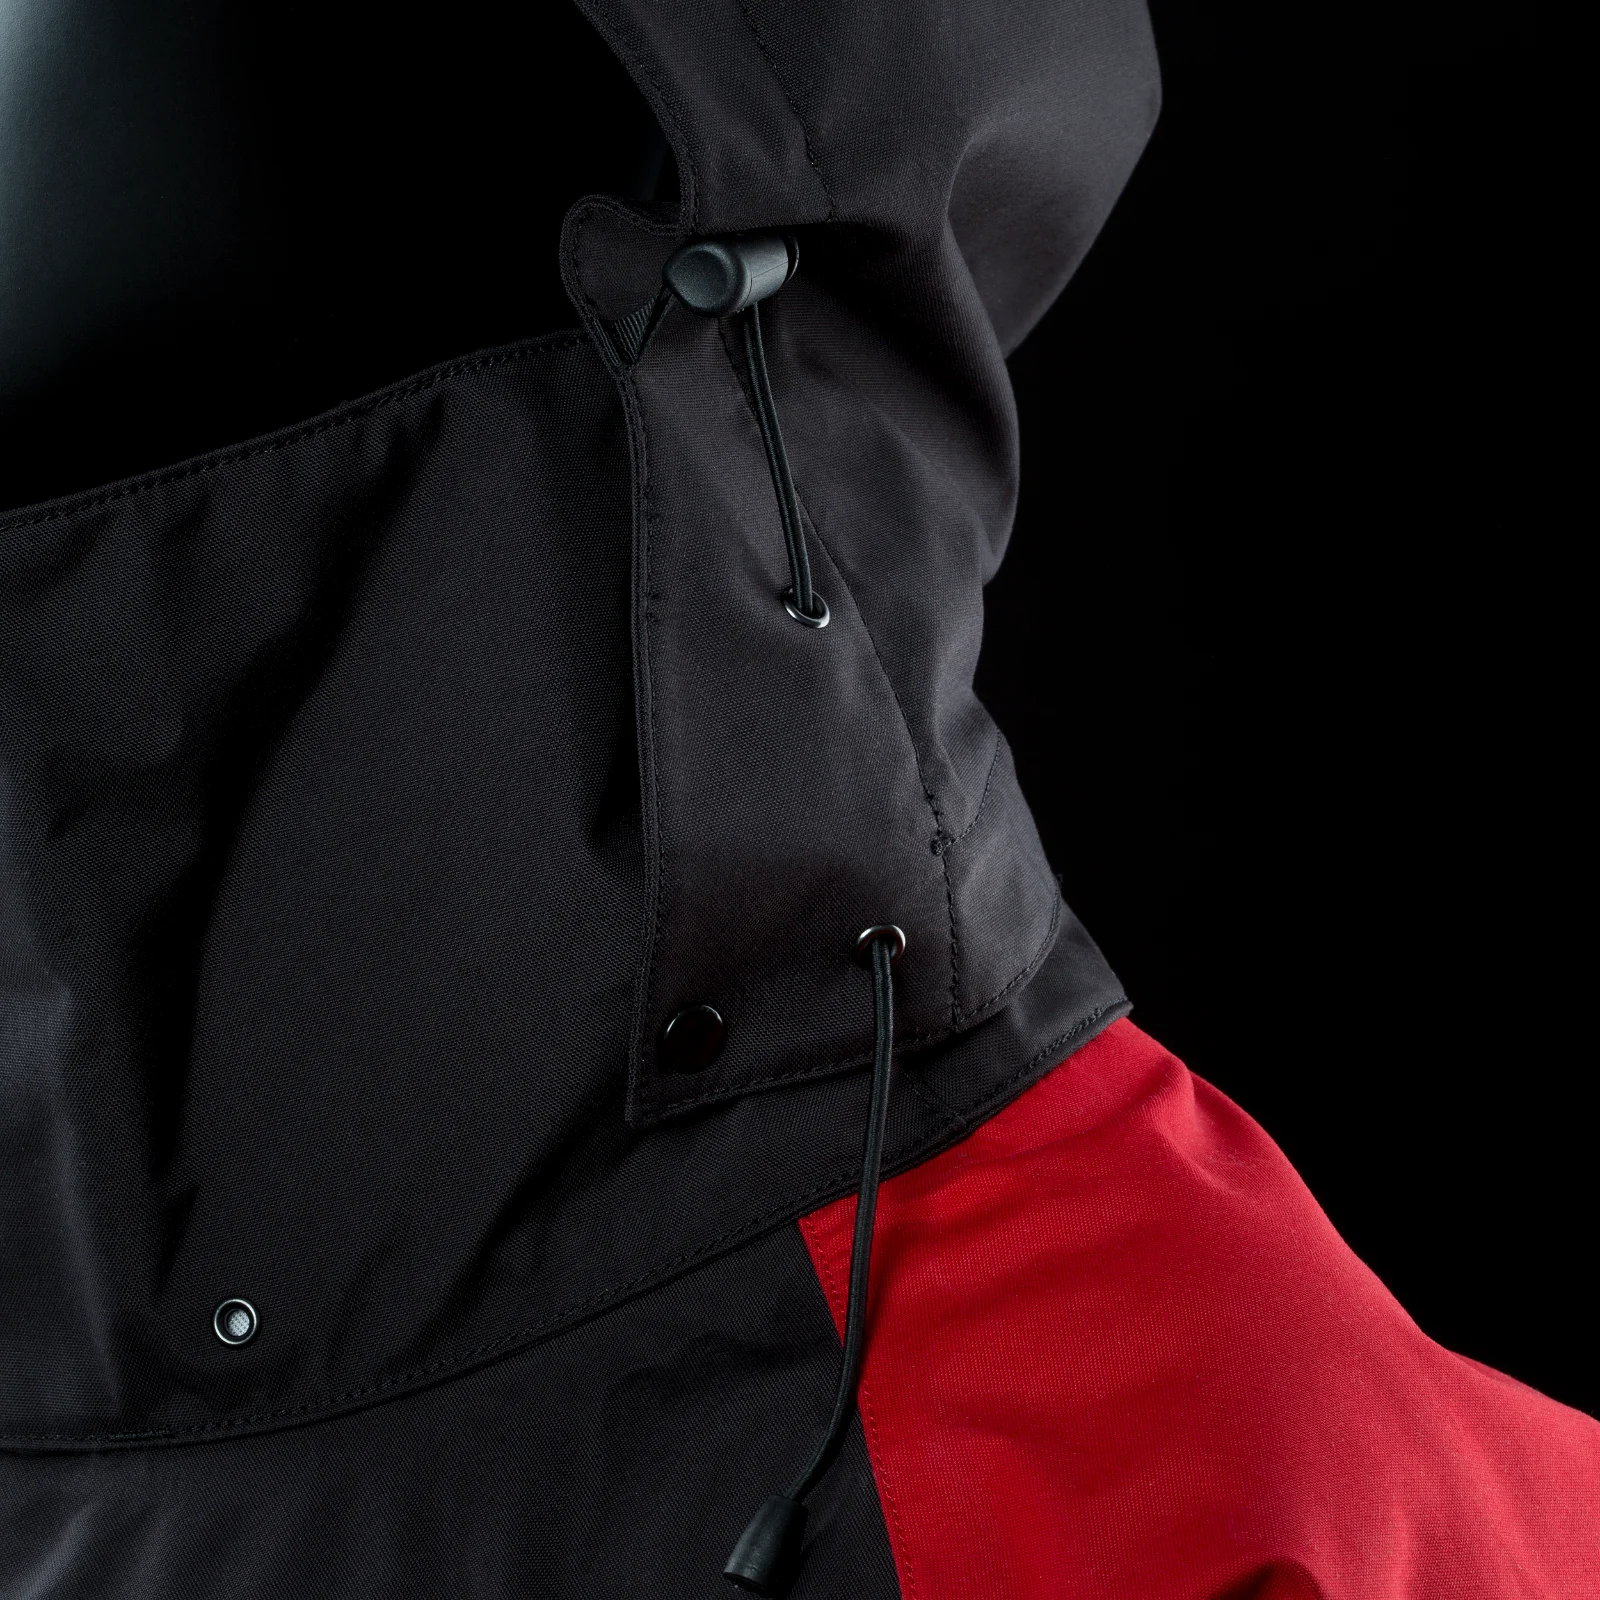 ION 2022 Drysuit HT Fuse Lightweight FZ dark olive/red/black - ADJUSTABLE_HOOD